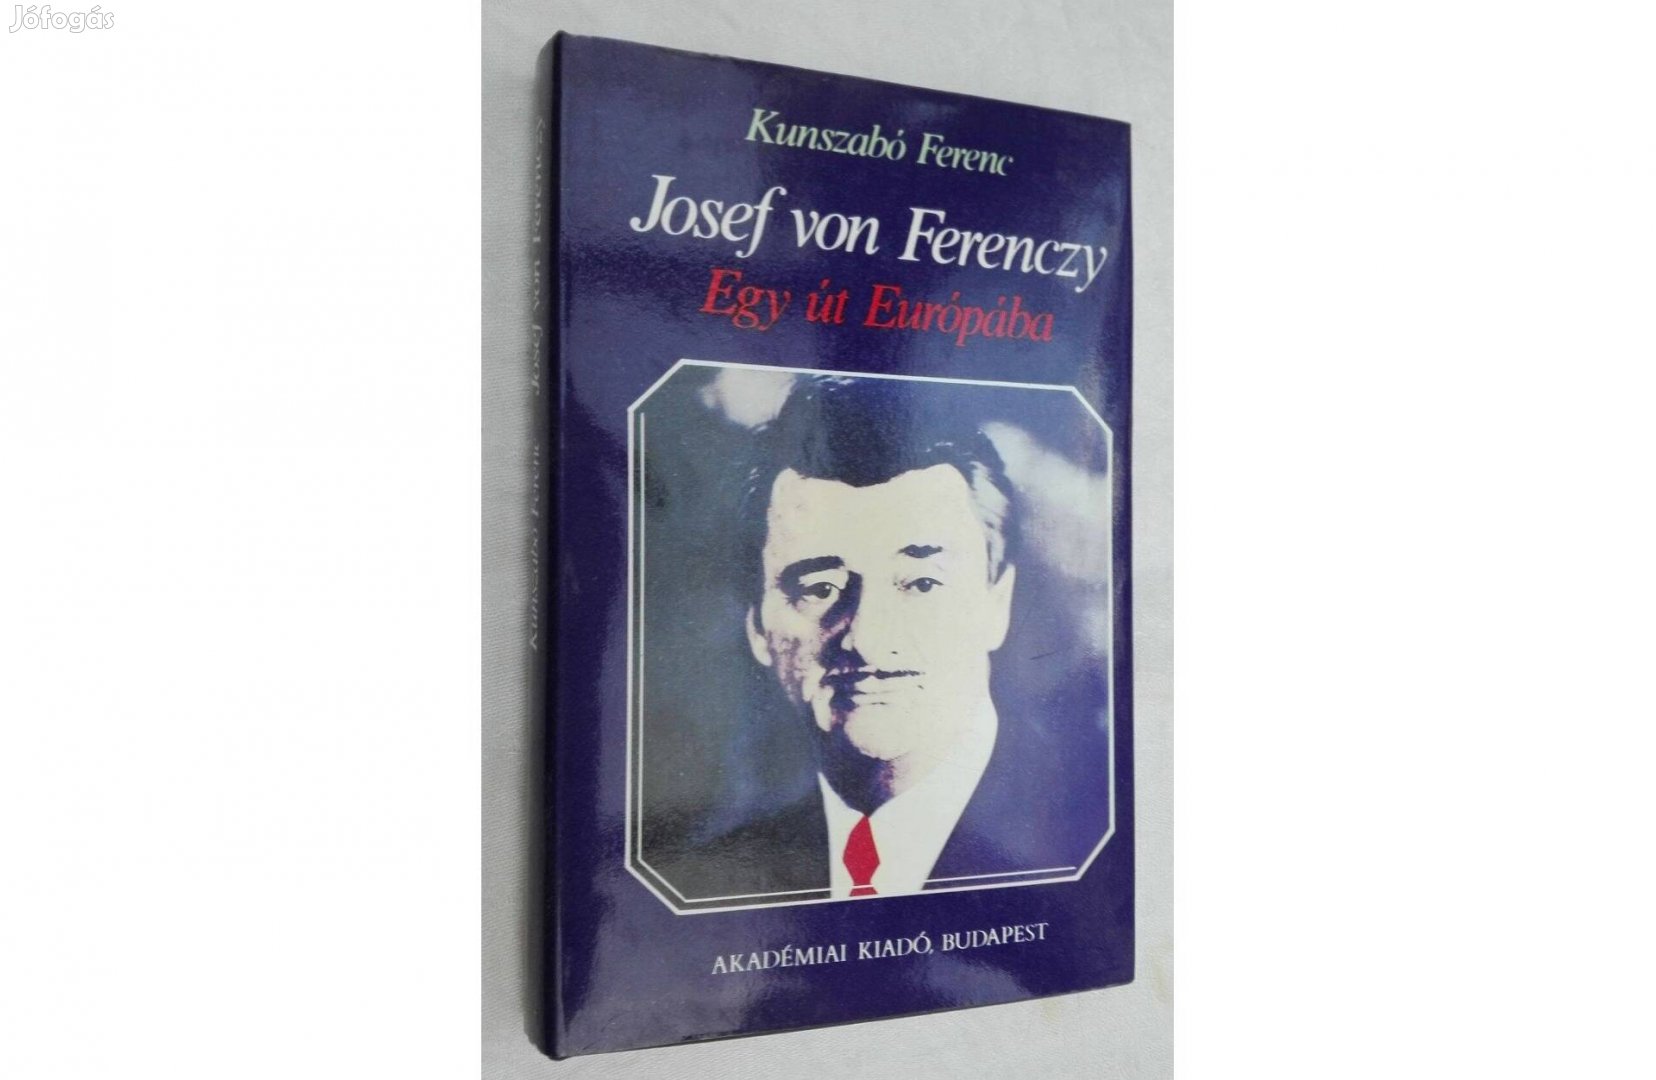 Josef von Ferenczy, Egy út Európába, írta: Kunszabó Ferenc